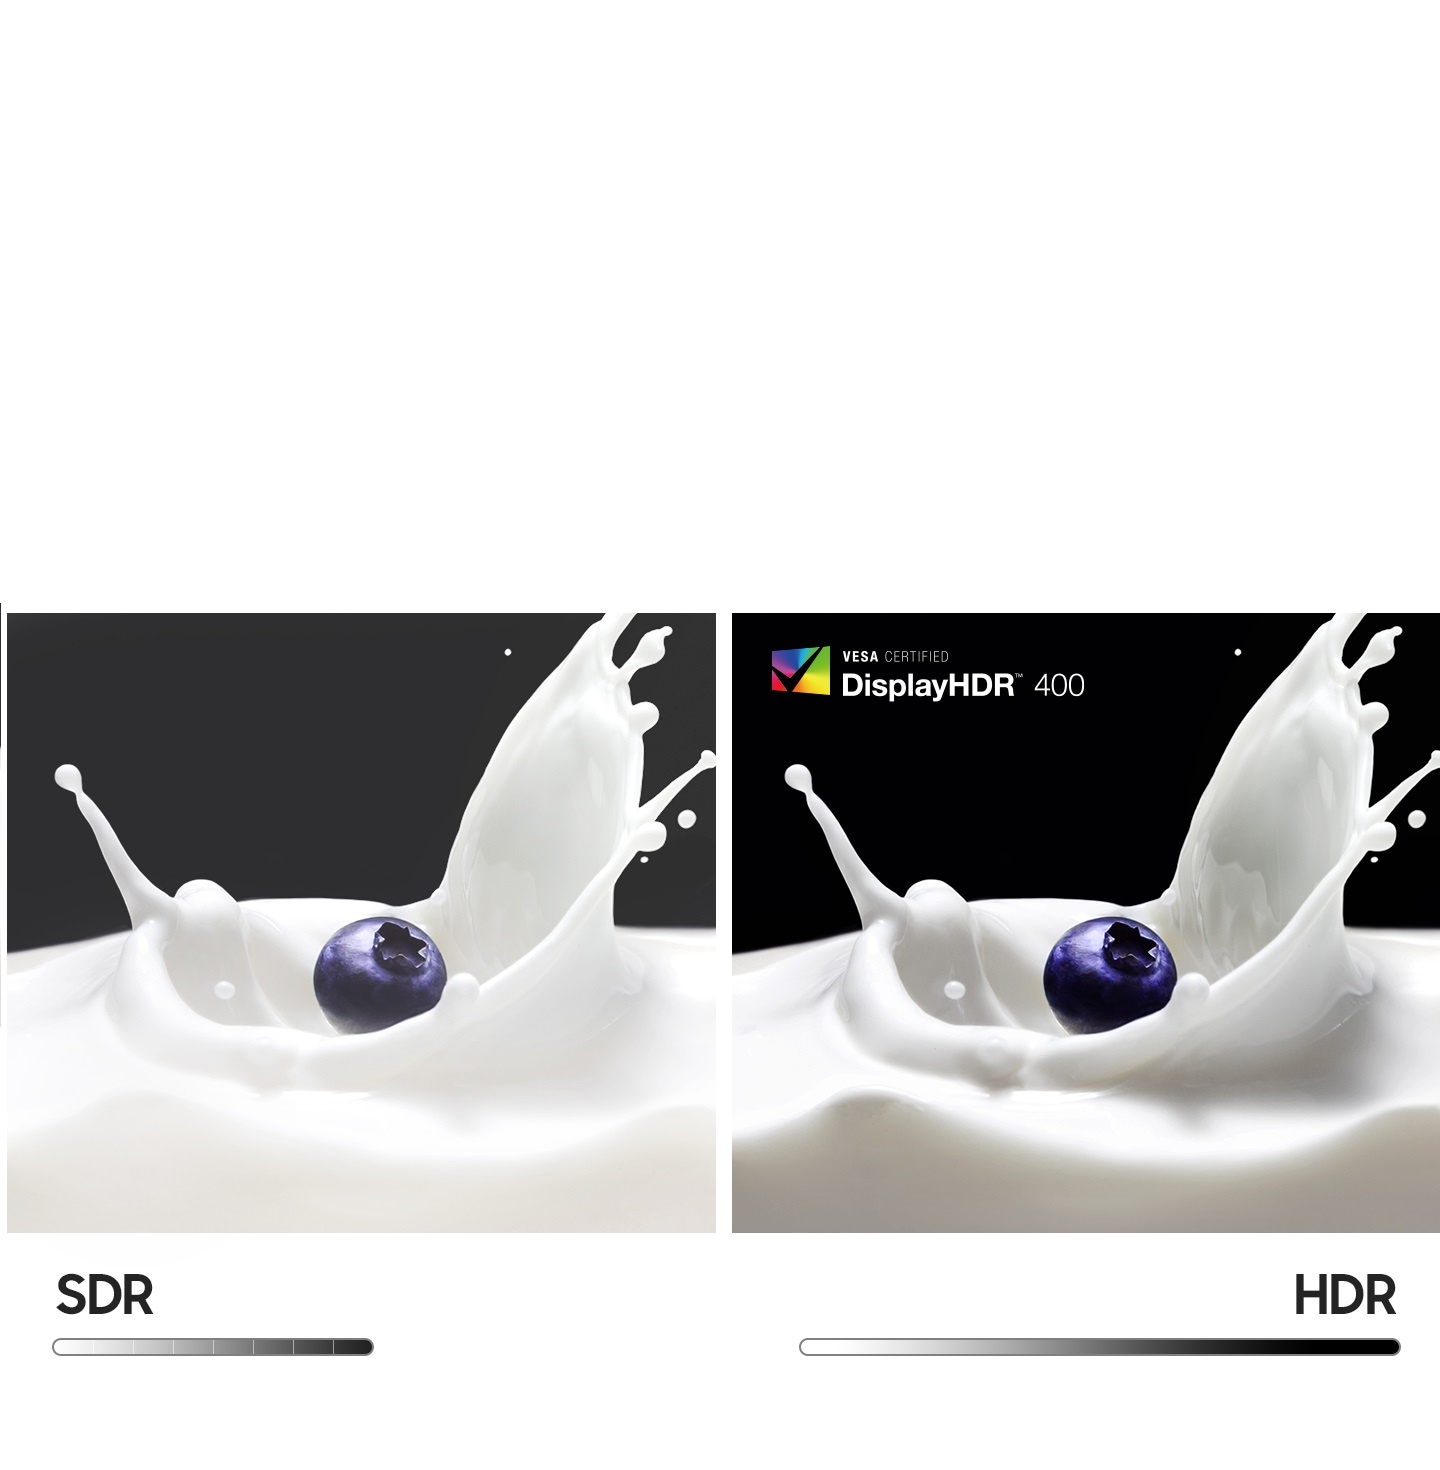 Hai quả việt quất giống hệt nhau nằm cạnh nhau được cho là đáp xuống sữa và tạo ra một lượng chất lỏng bắn tung tóe. Quả việt quất ở bên trái đang trình diễn SDR, trong khi quả việt quất ở bên phải đang trình diễn HDR, được phủ bằng logo † VESA Certified DisplayHDR 600 '. So với phần SDR, HDR hiển thị màu tối sâu hơn nhiều và màu sáng sống động hơn. Bên dưới là các thanh đen trắng nằm dài hơn và tinh vi hơn cho HDR so với SDR.